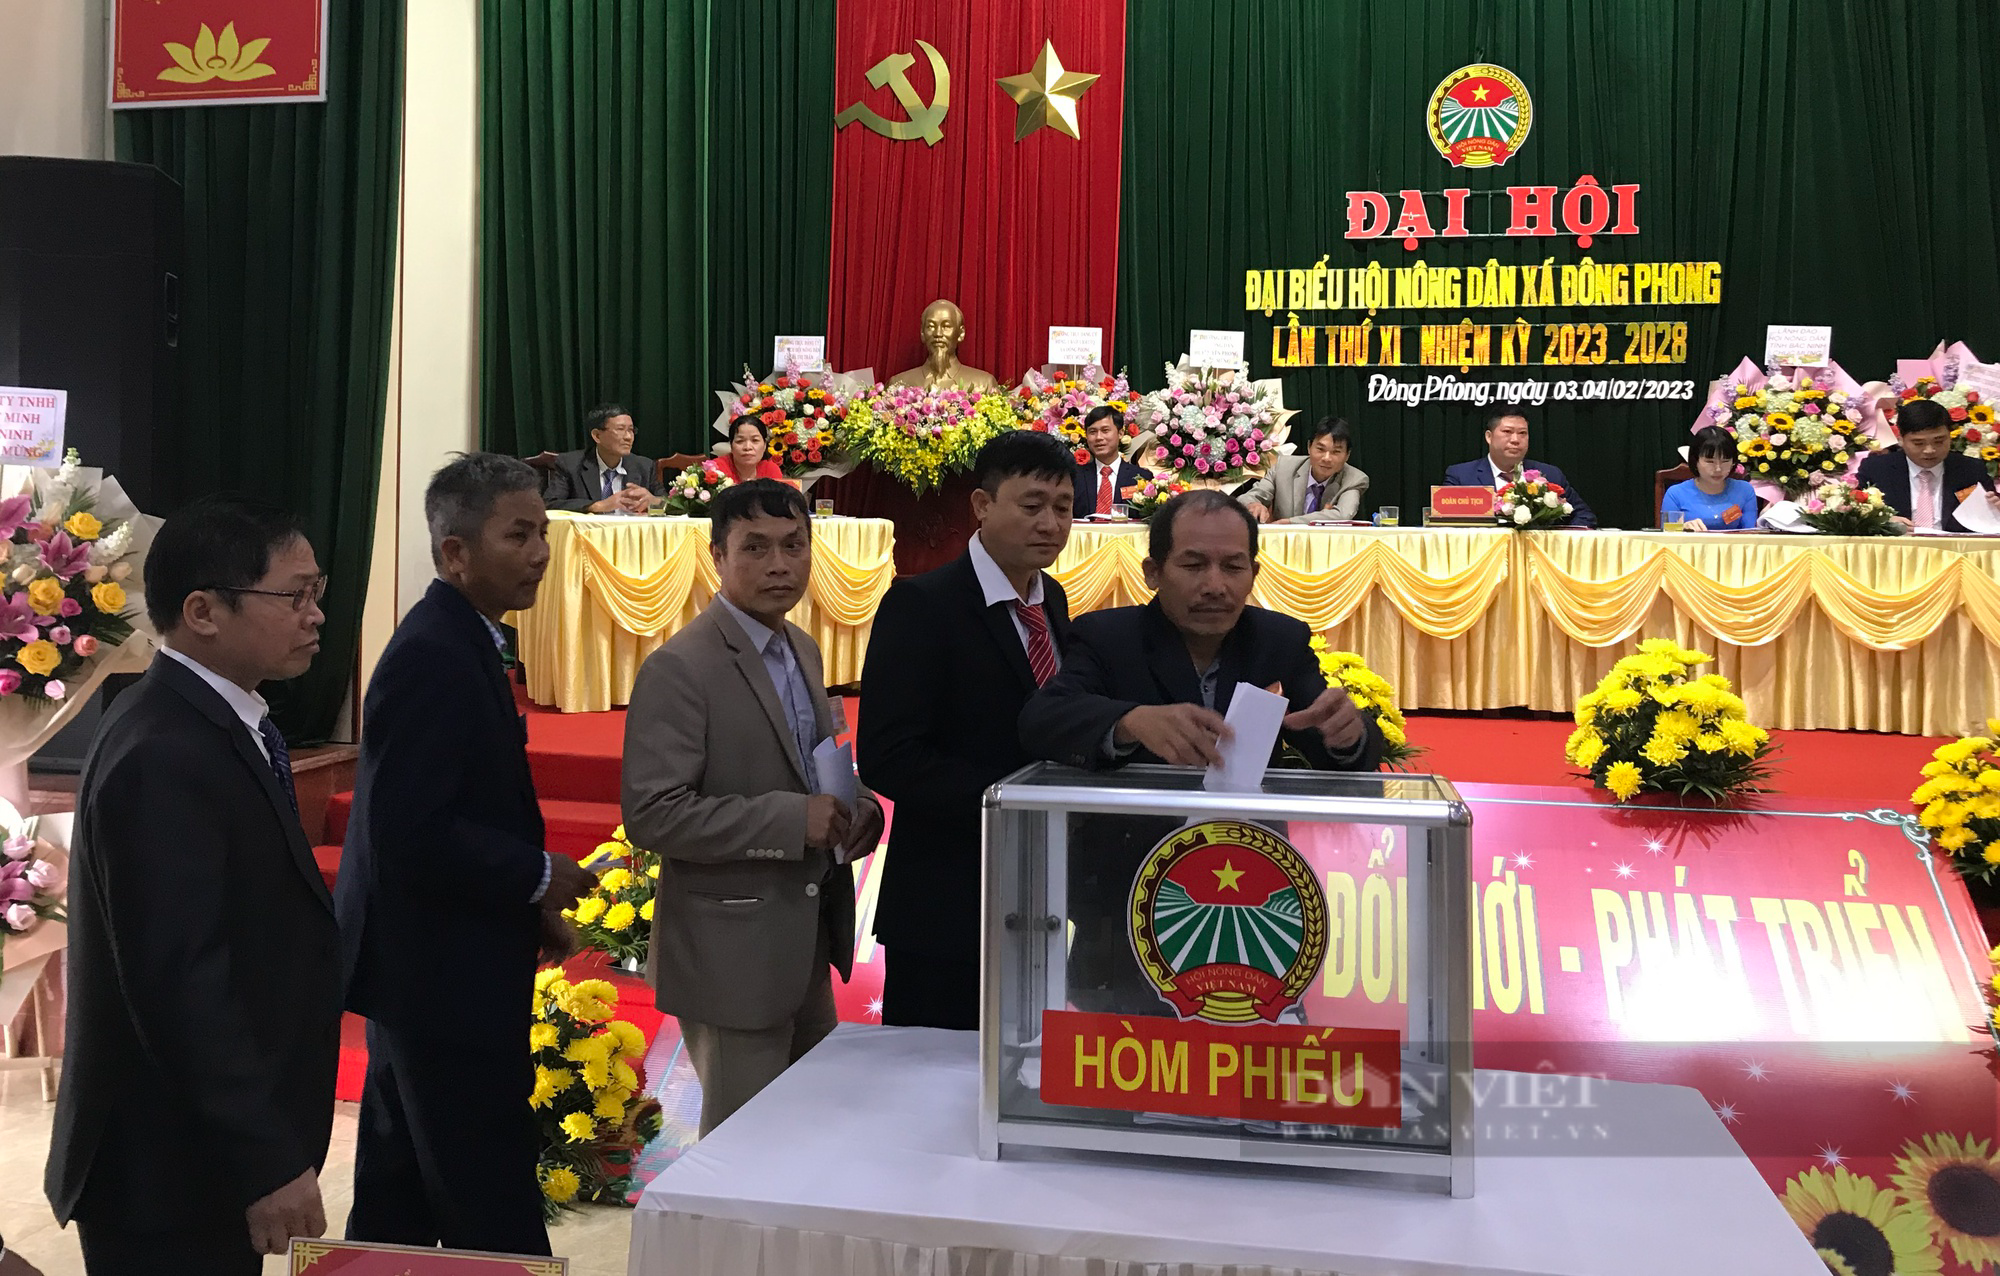 Bắc Ninh: Hoàn thành chỉ đạo Đại hội điểm Hội Nông dân cấp cơ sở - Ảnh 2.